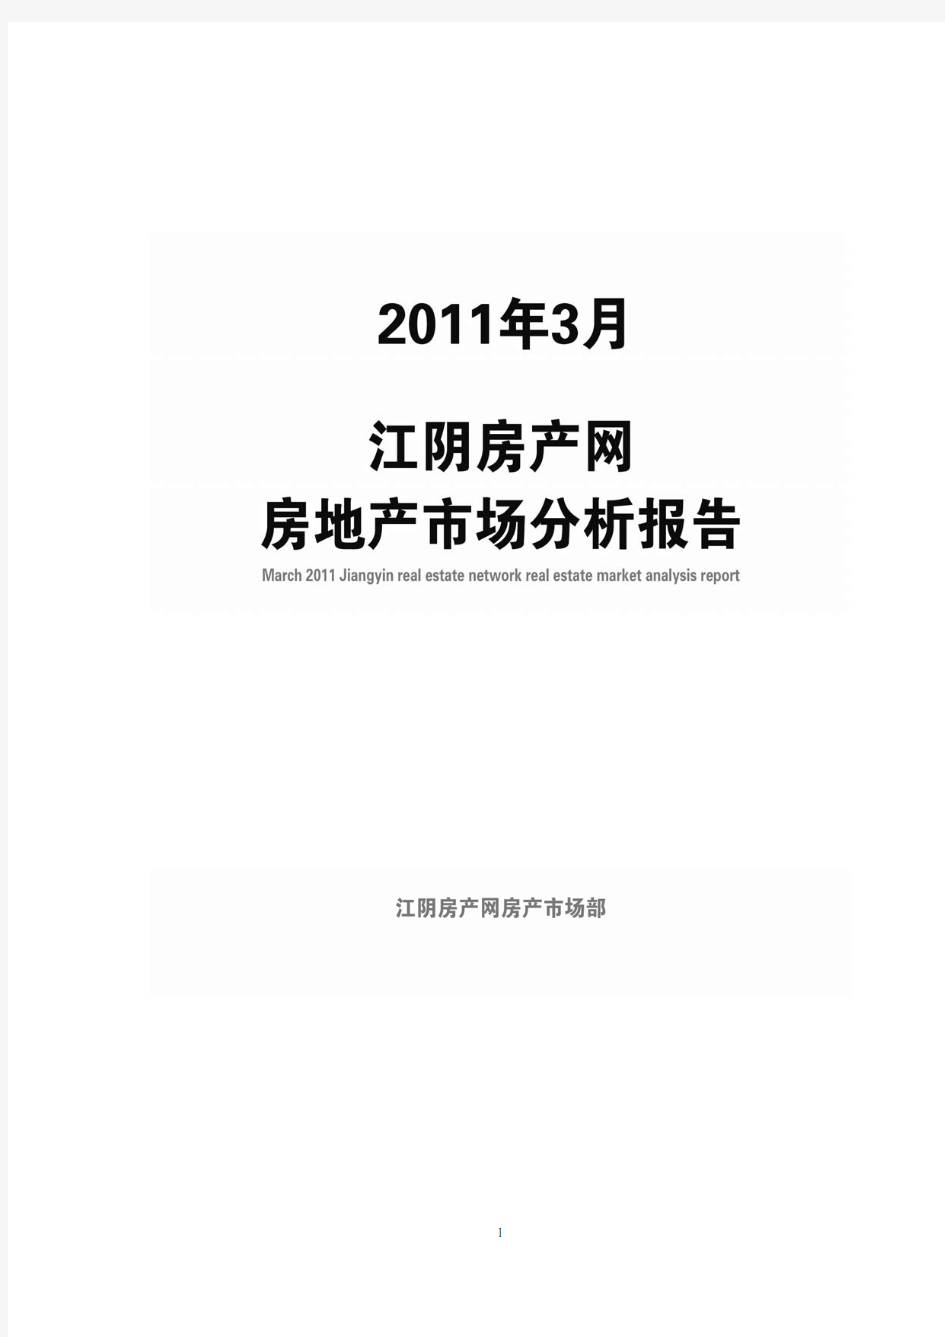 2011年3月江阴房地产市场分析报告(PDF)